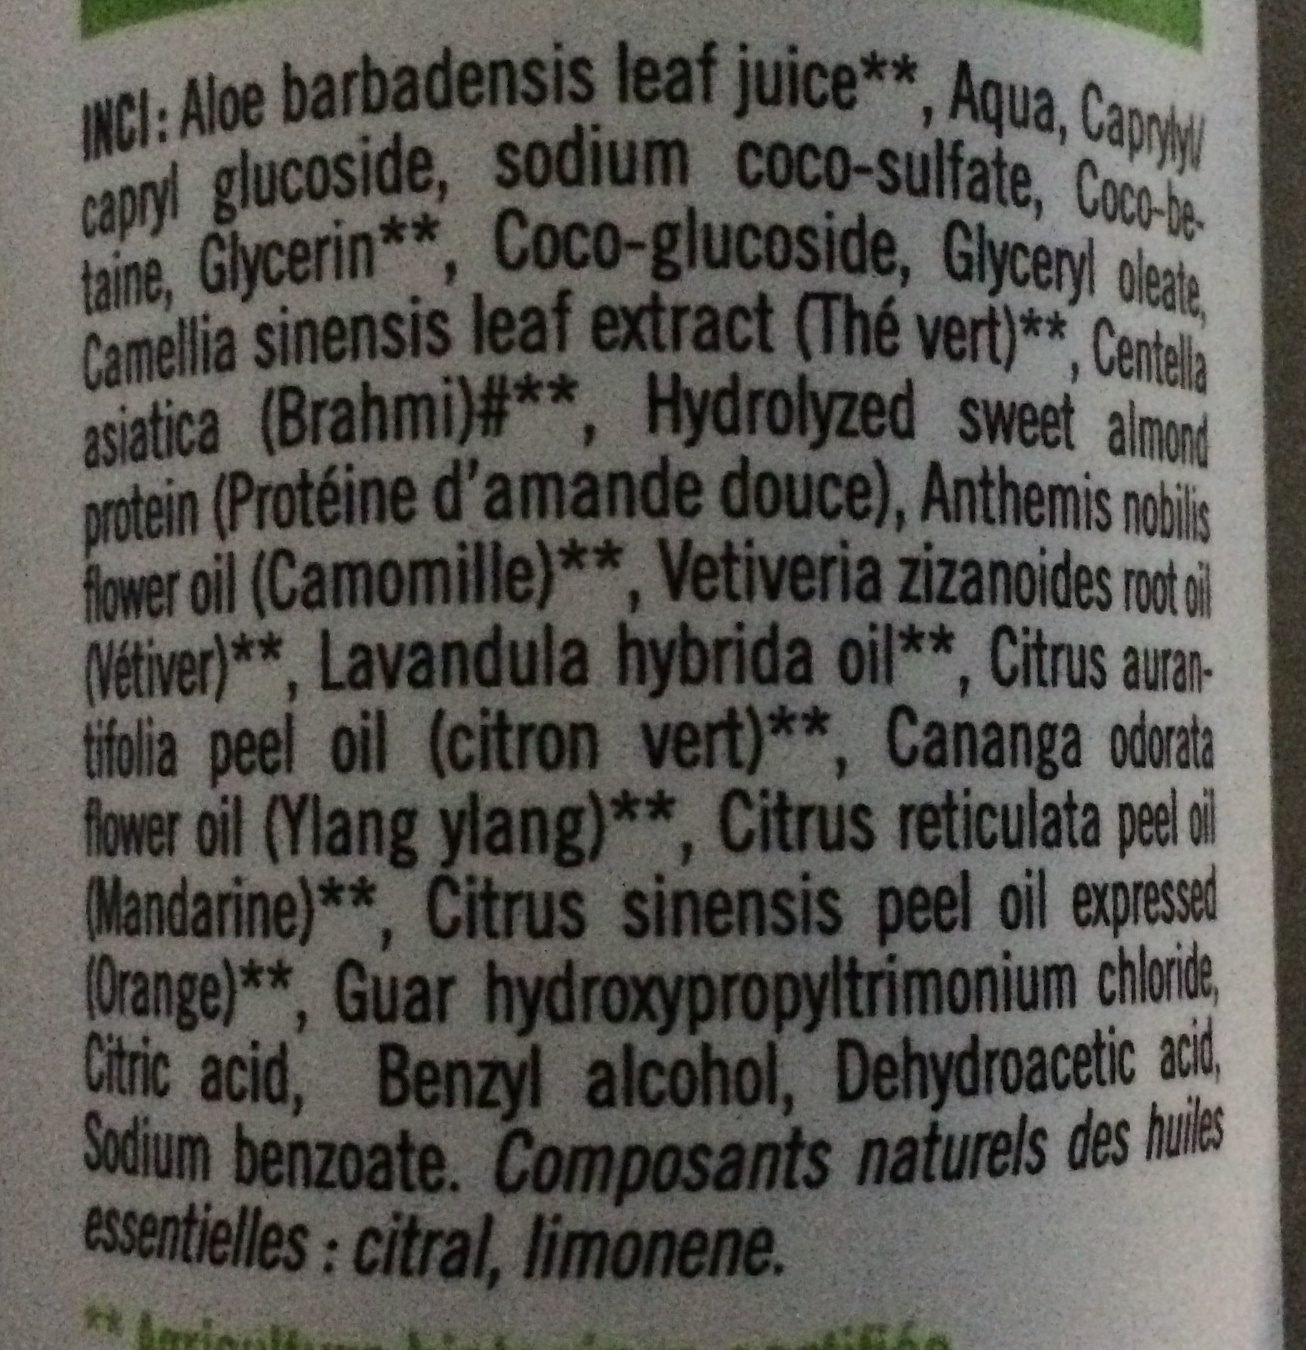 shampoing aloe vera - Inhaltsstoffe - fr